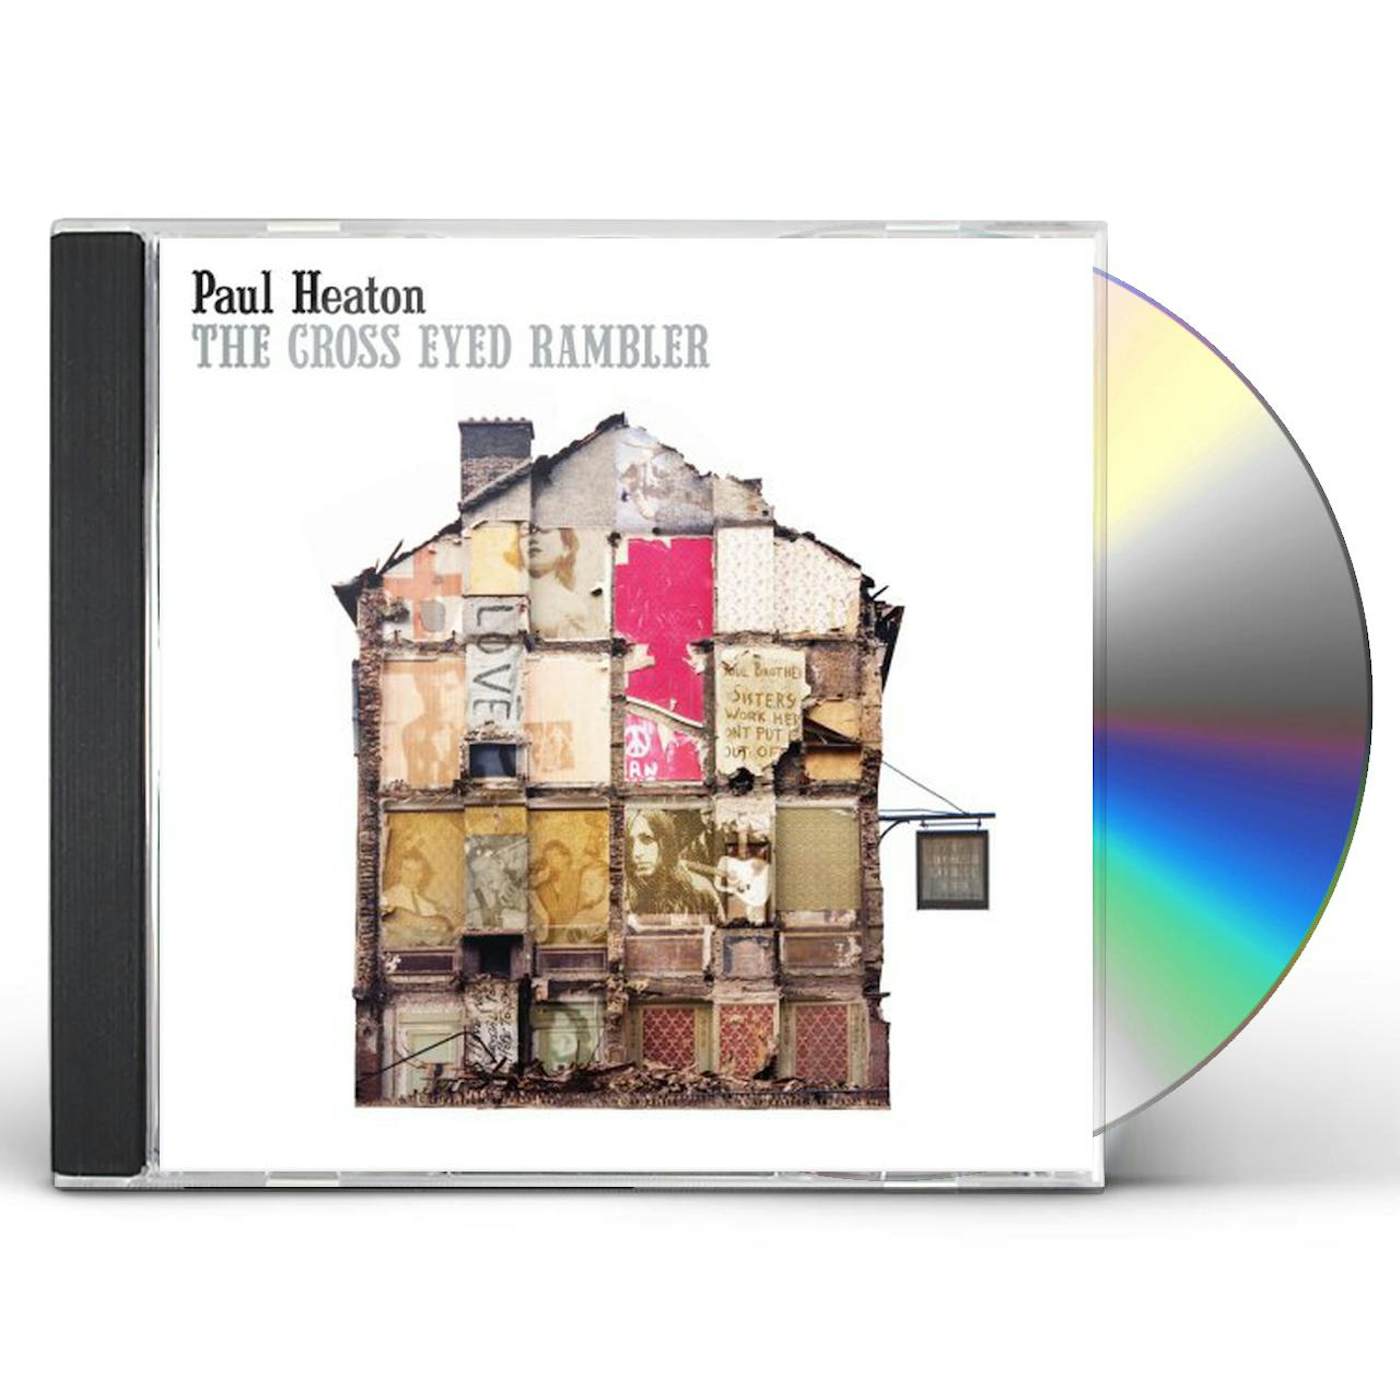 Paul Heaton CROSS EYED RAMBLER CD